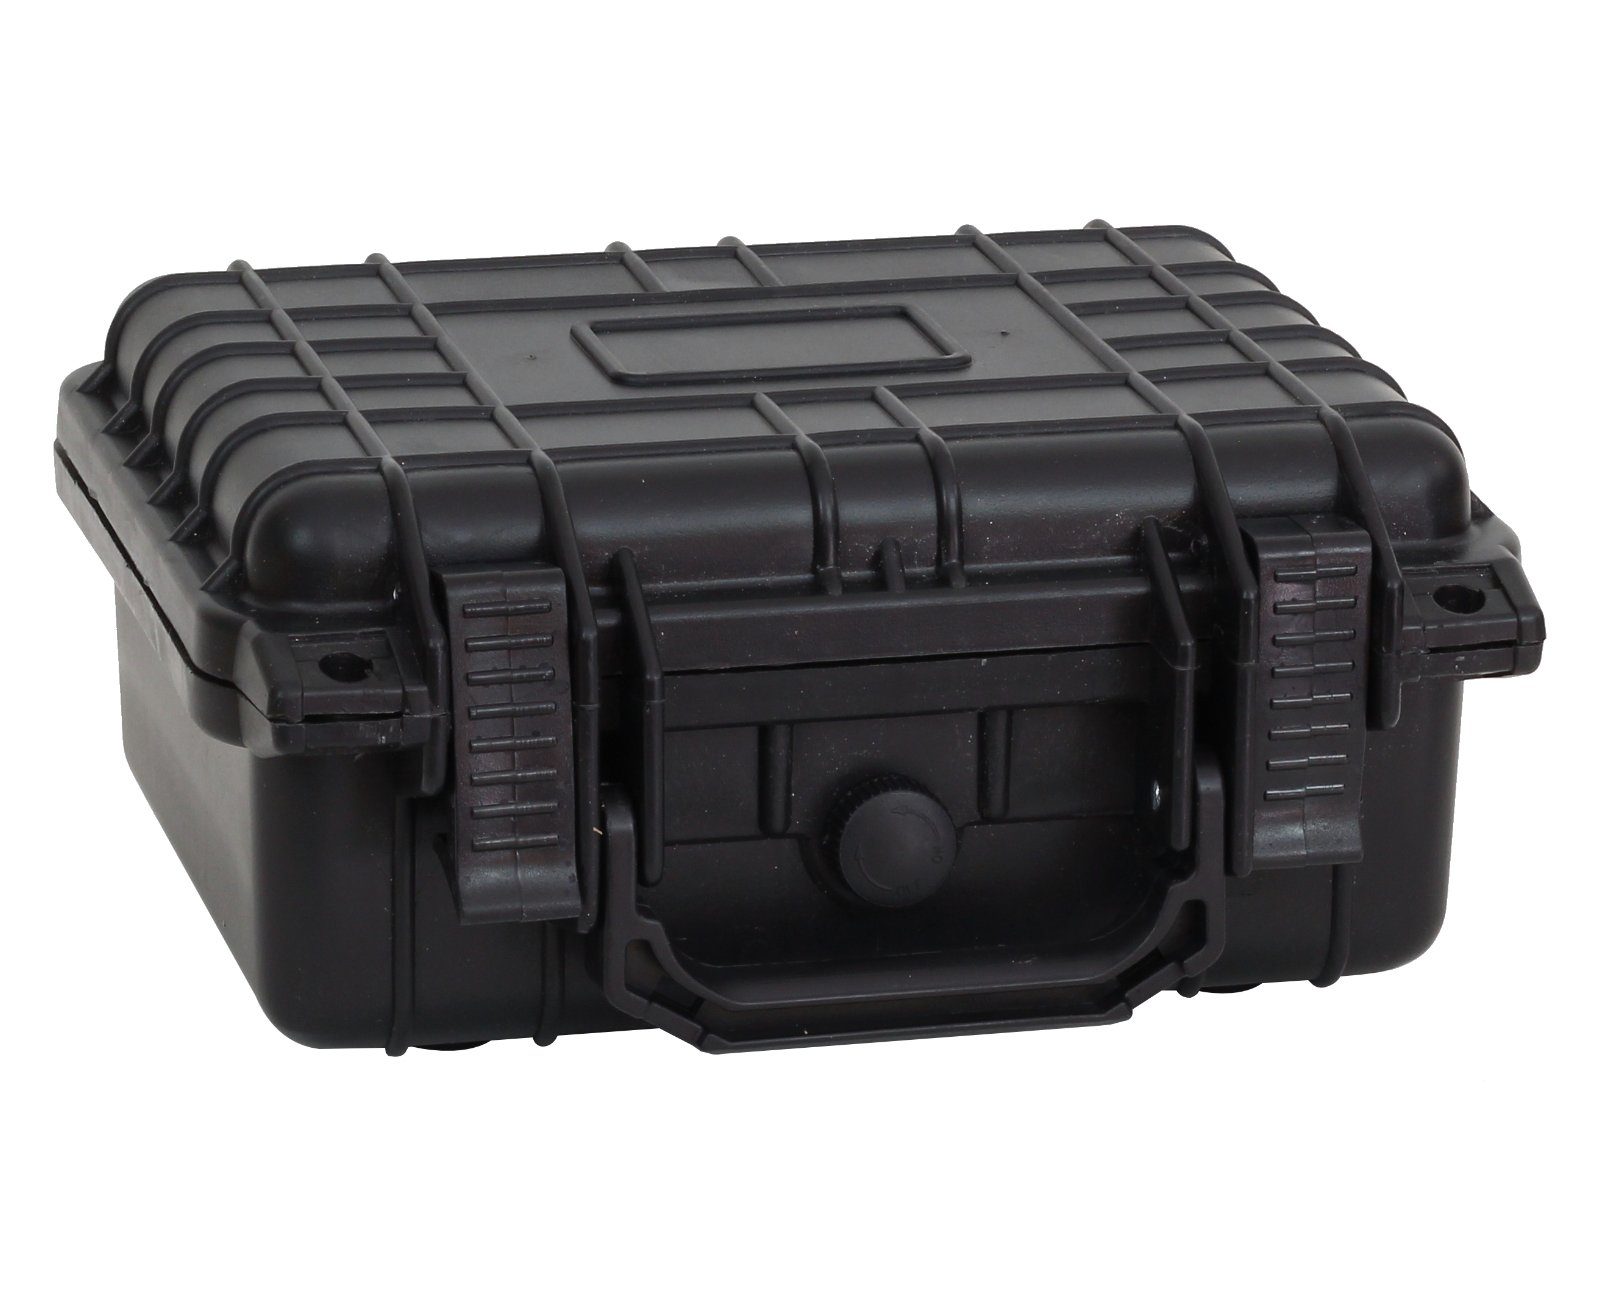 anpassbar Kunststoffkoffer Schutzkoffer HAGO schwar Koffer Schumstoff Kamerakoffer